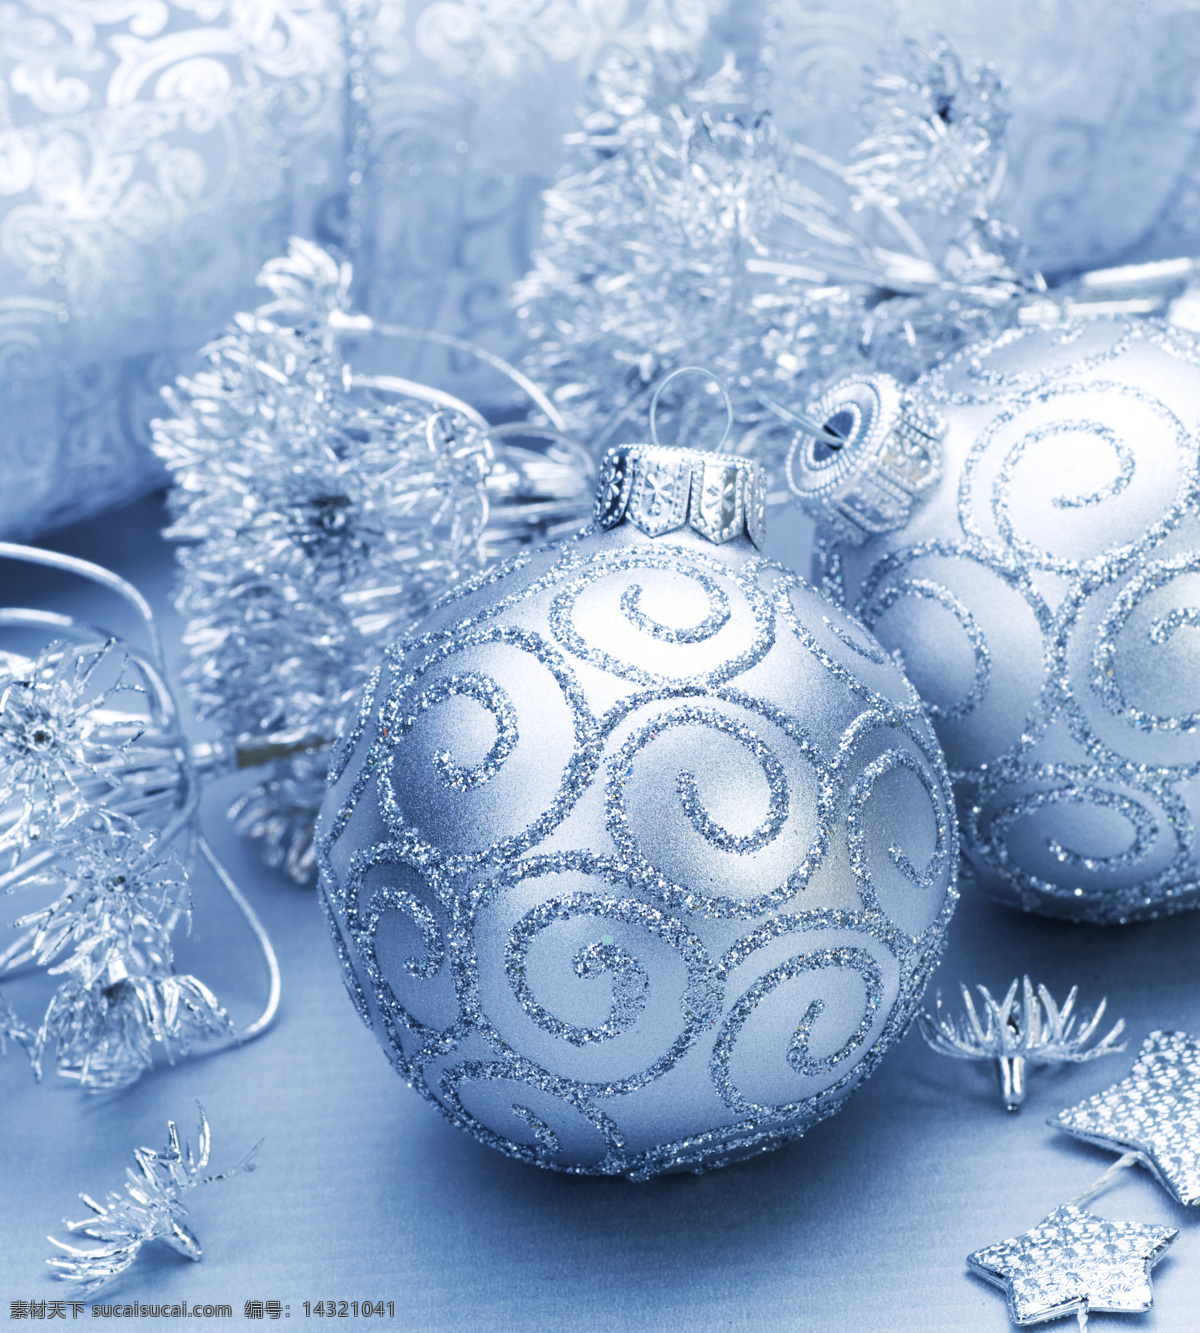 精致 圣诞 彩球 节日 圣诞节 圣诞节快乐 开心 温暖 圣诞彩球 精美 银色 节日庆典 生活百科